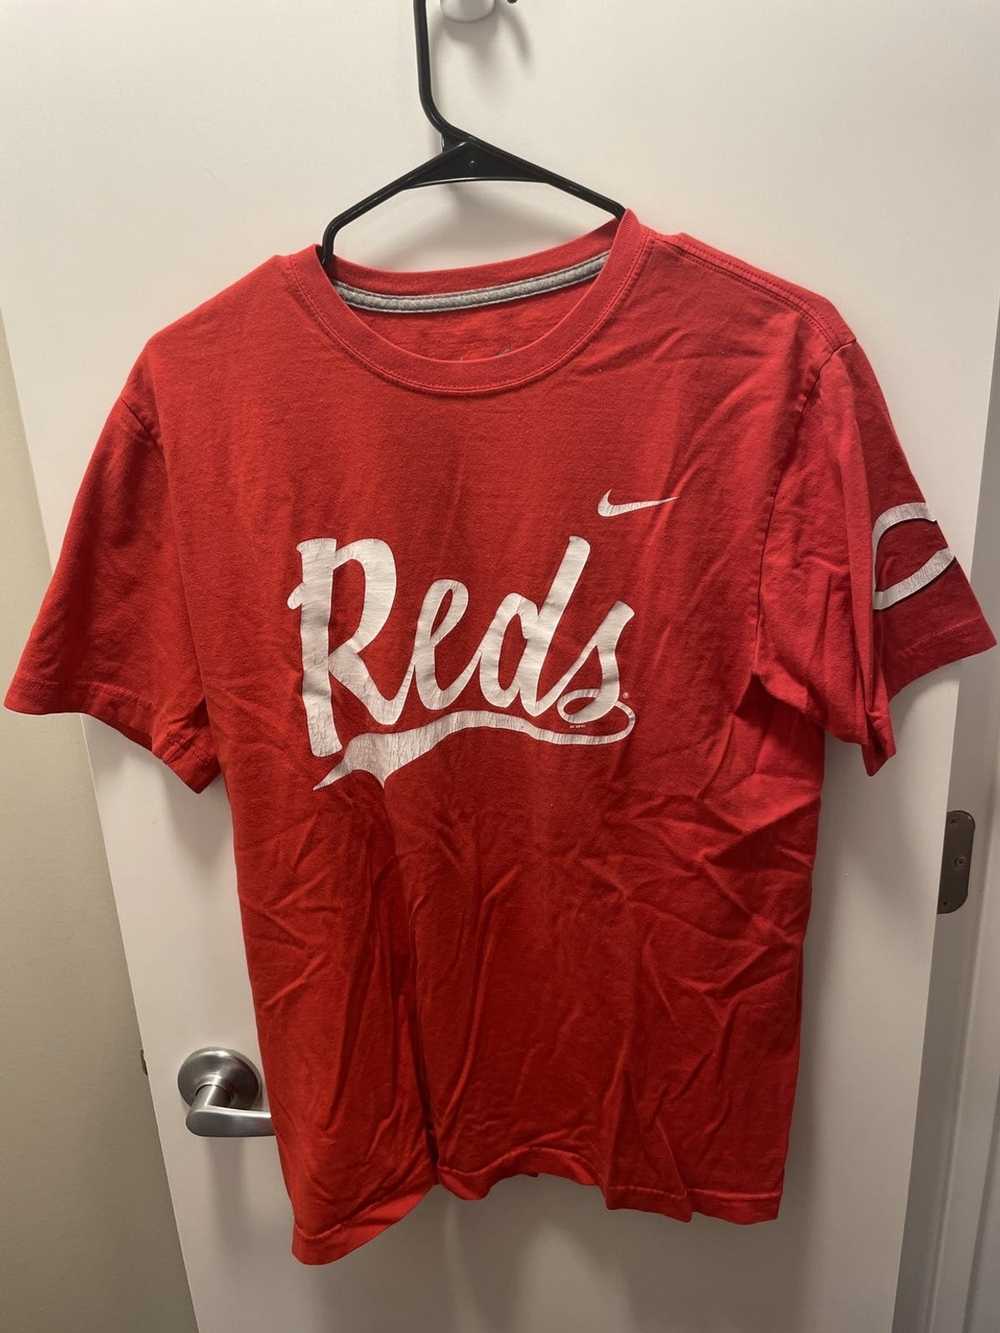 MLB × Nike Cincinnati Reds Tee - image 1